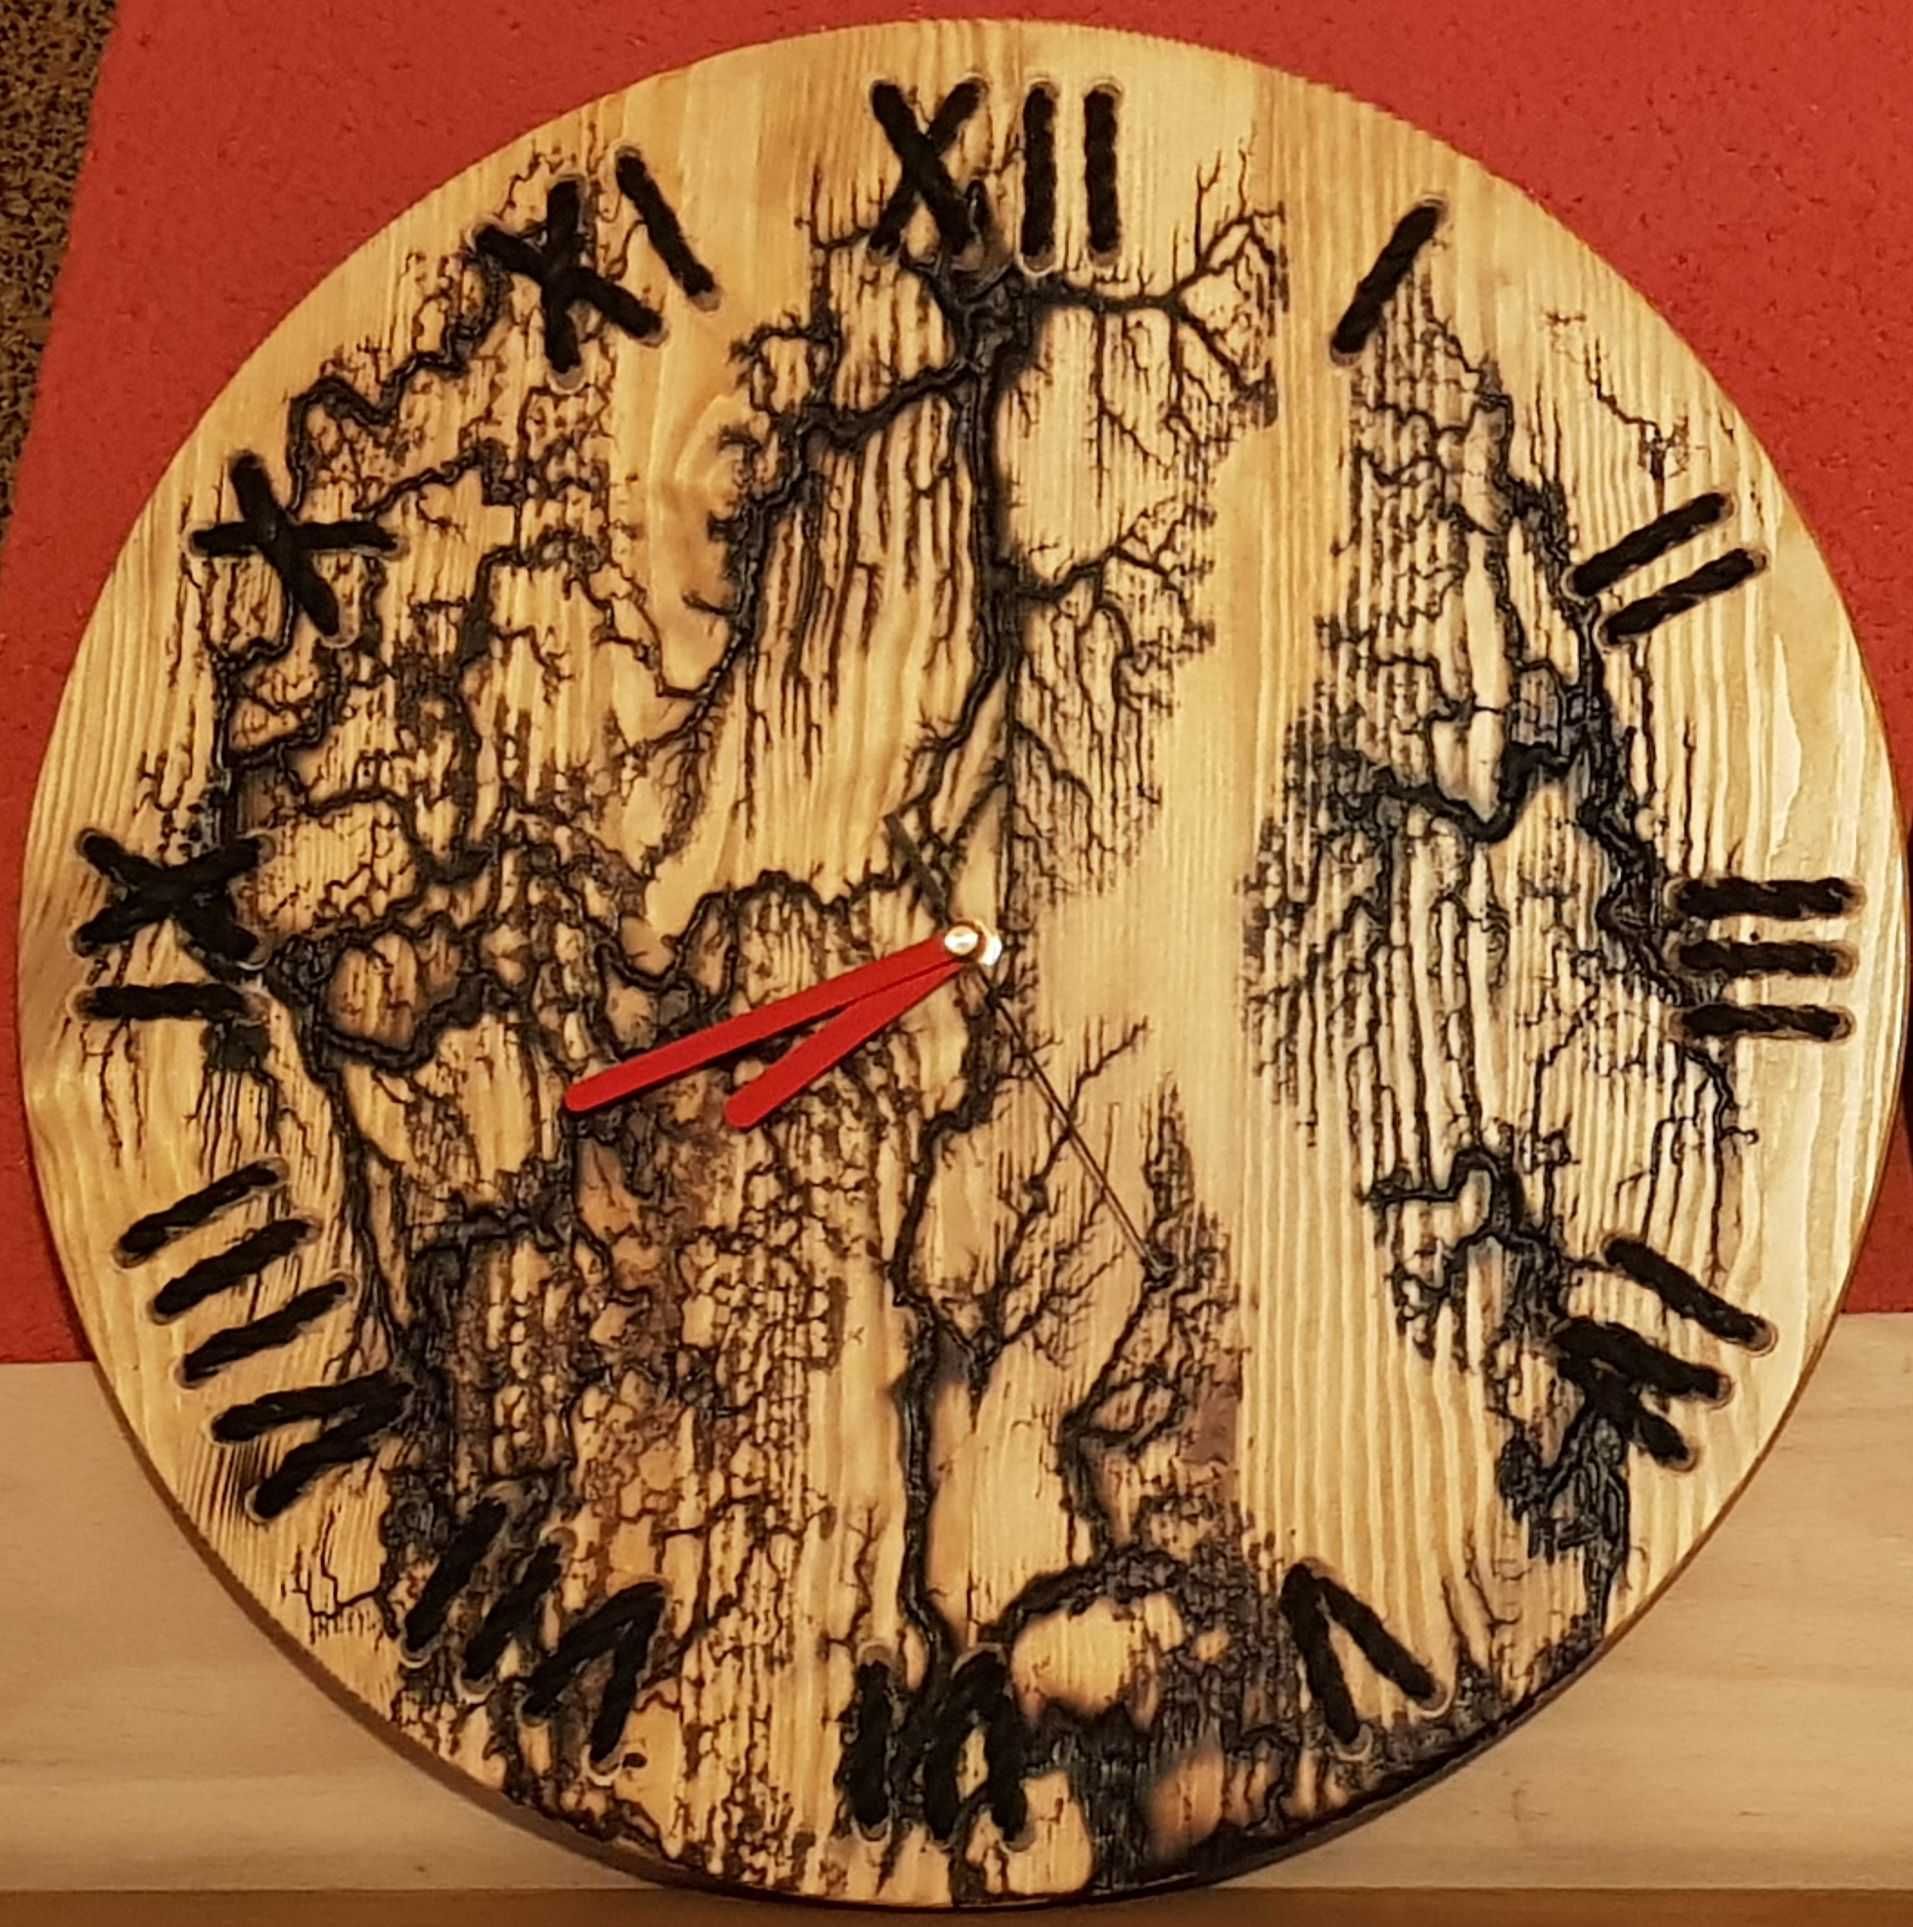 Zegar drewniany ścienny